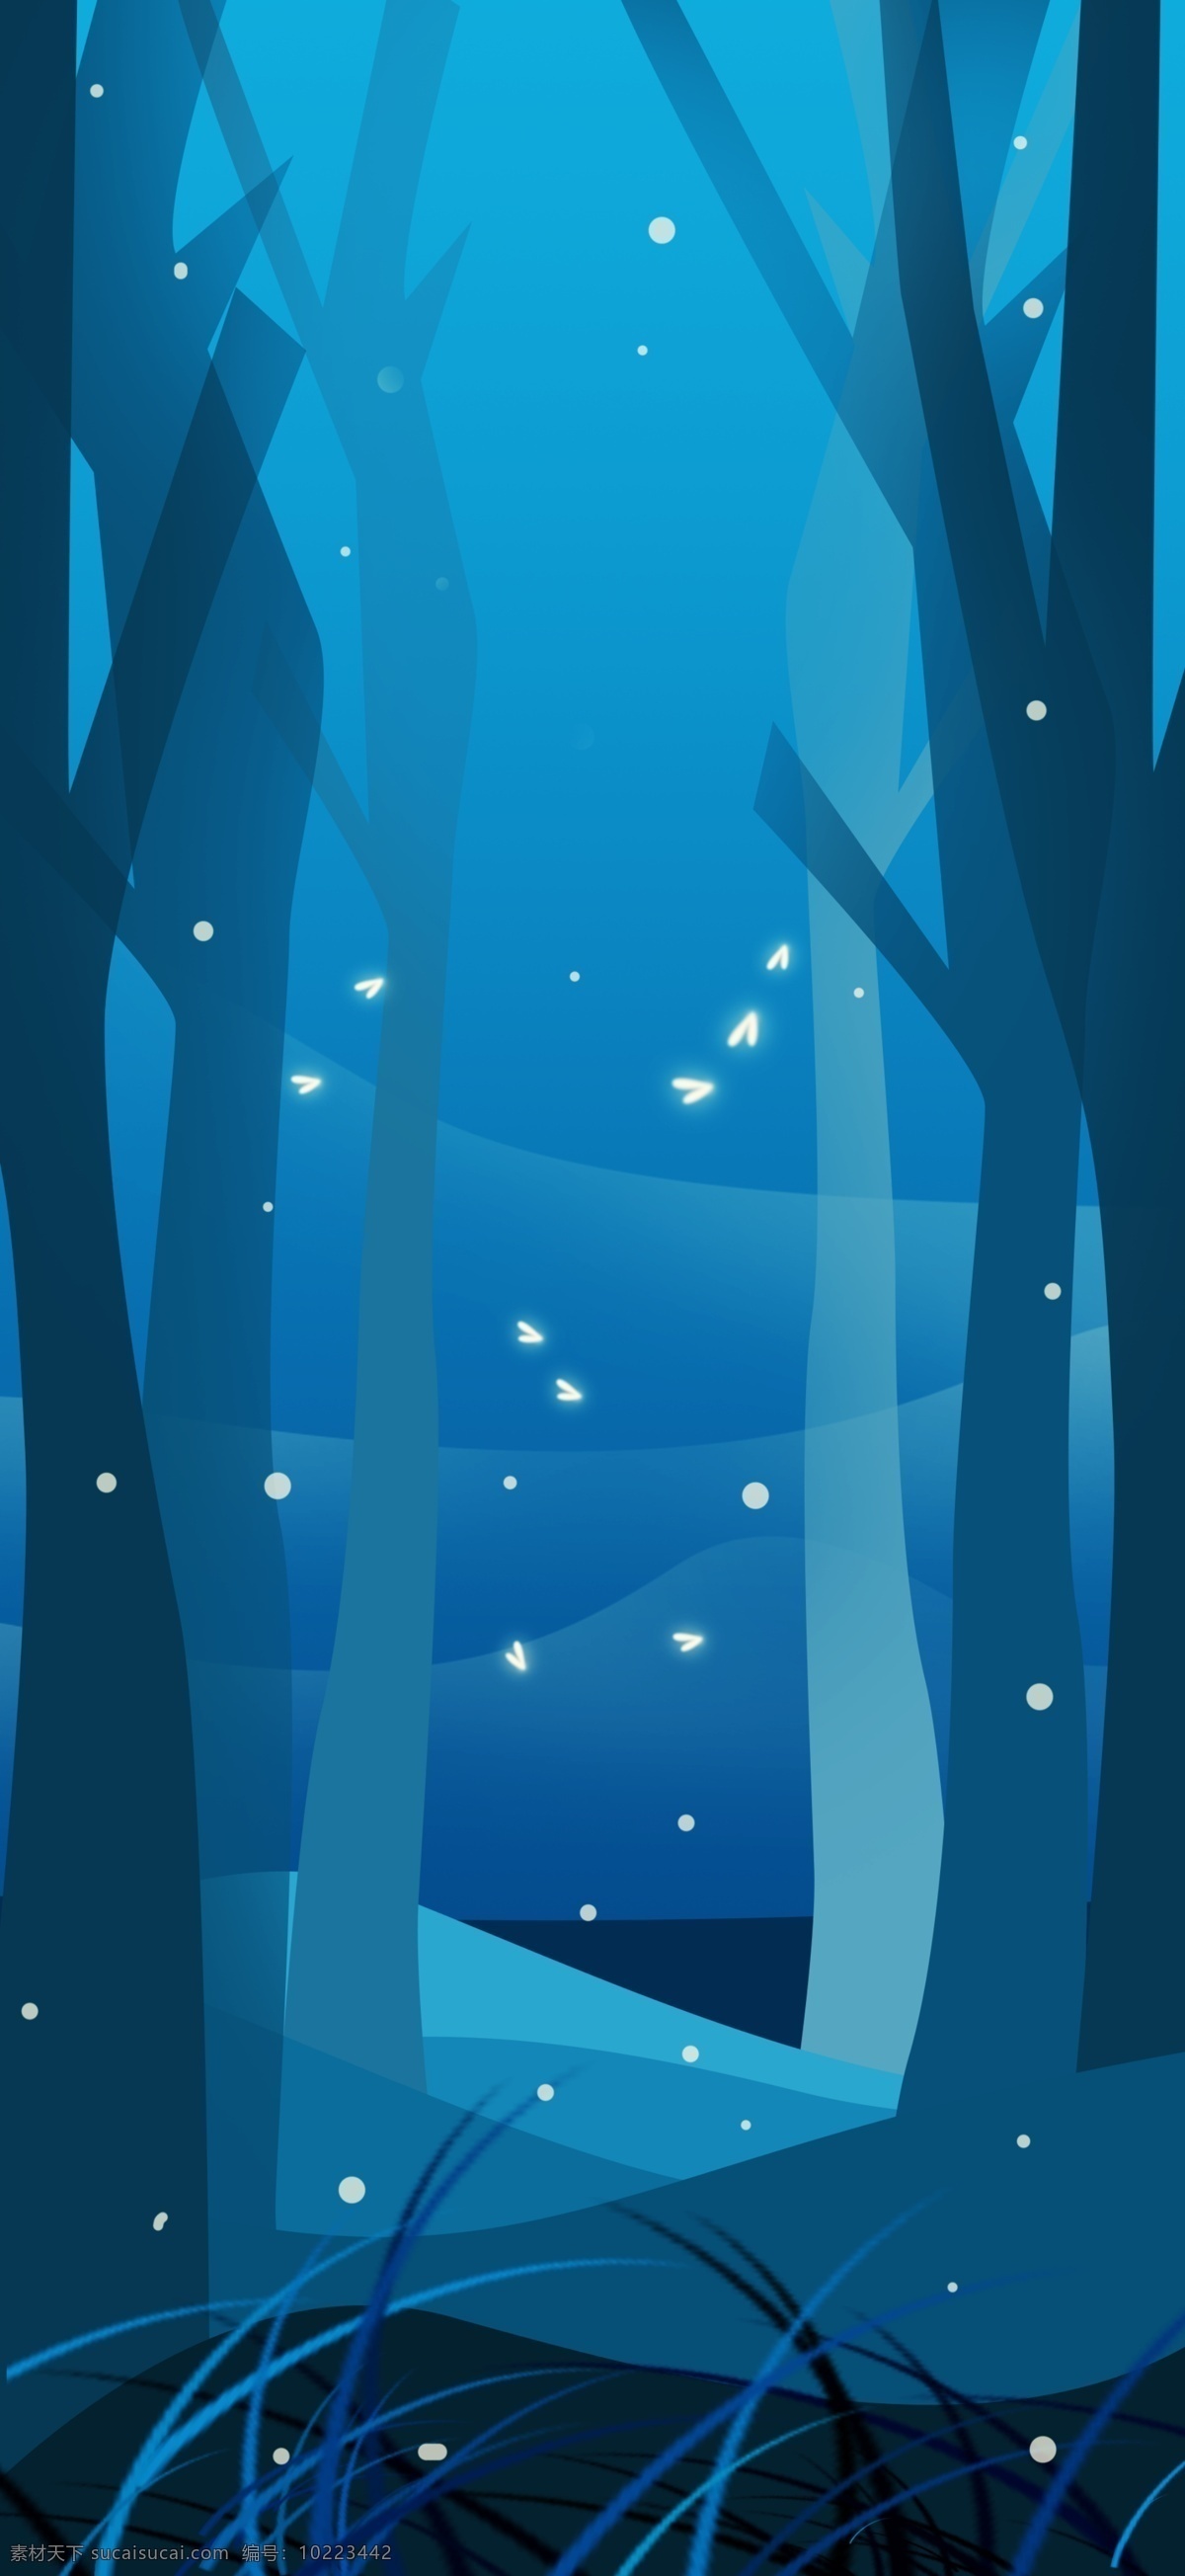 晚安 世界 唯美 树林 插画 背景 晚安世界 唯美背景 树林插画背景 广告背景 手绘背景 卡通背景